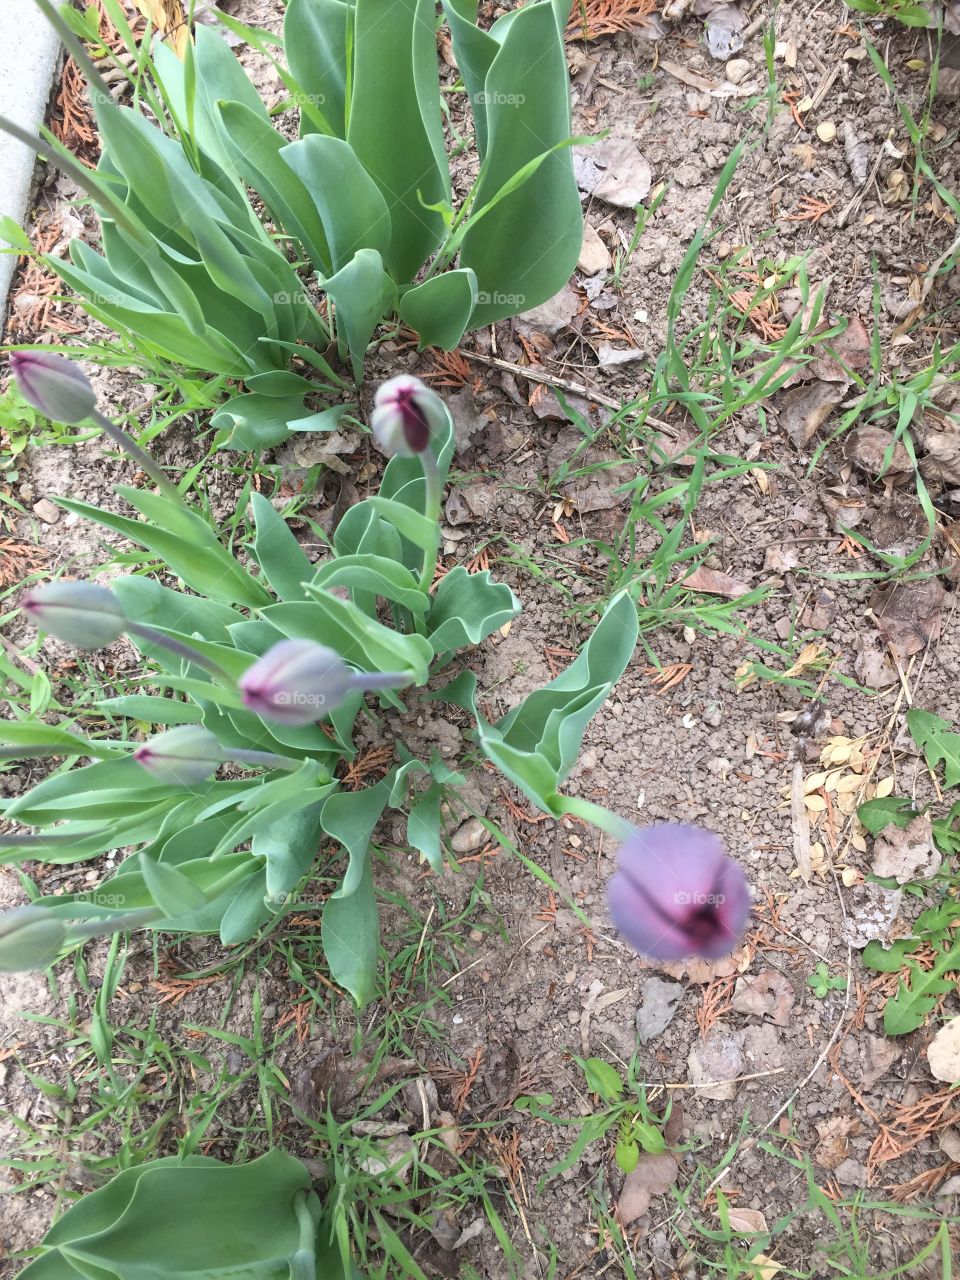 Blooming Purple Tulips in my Garden